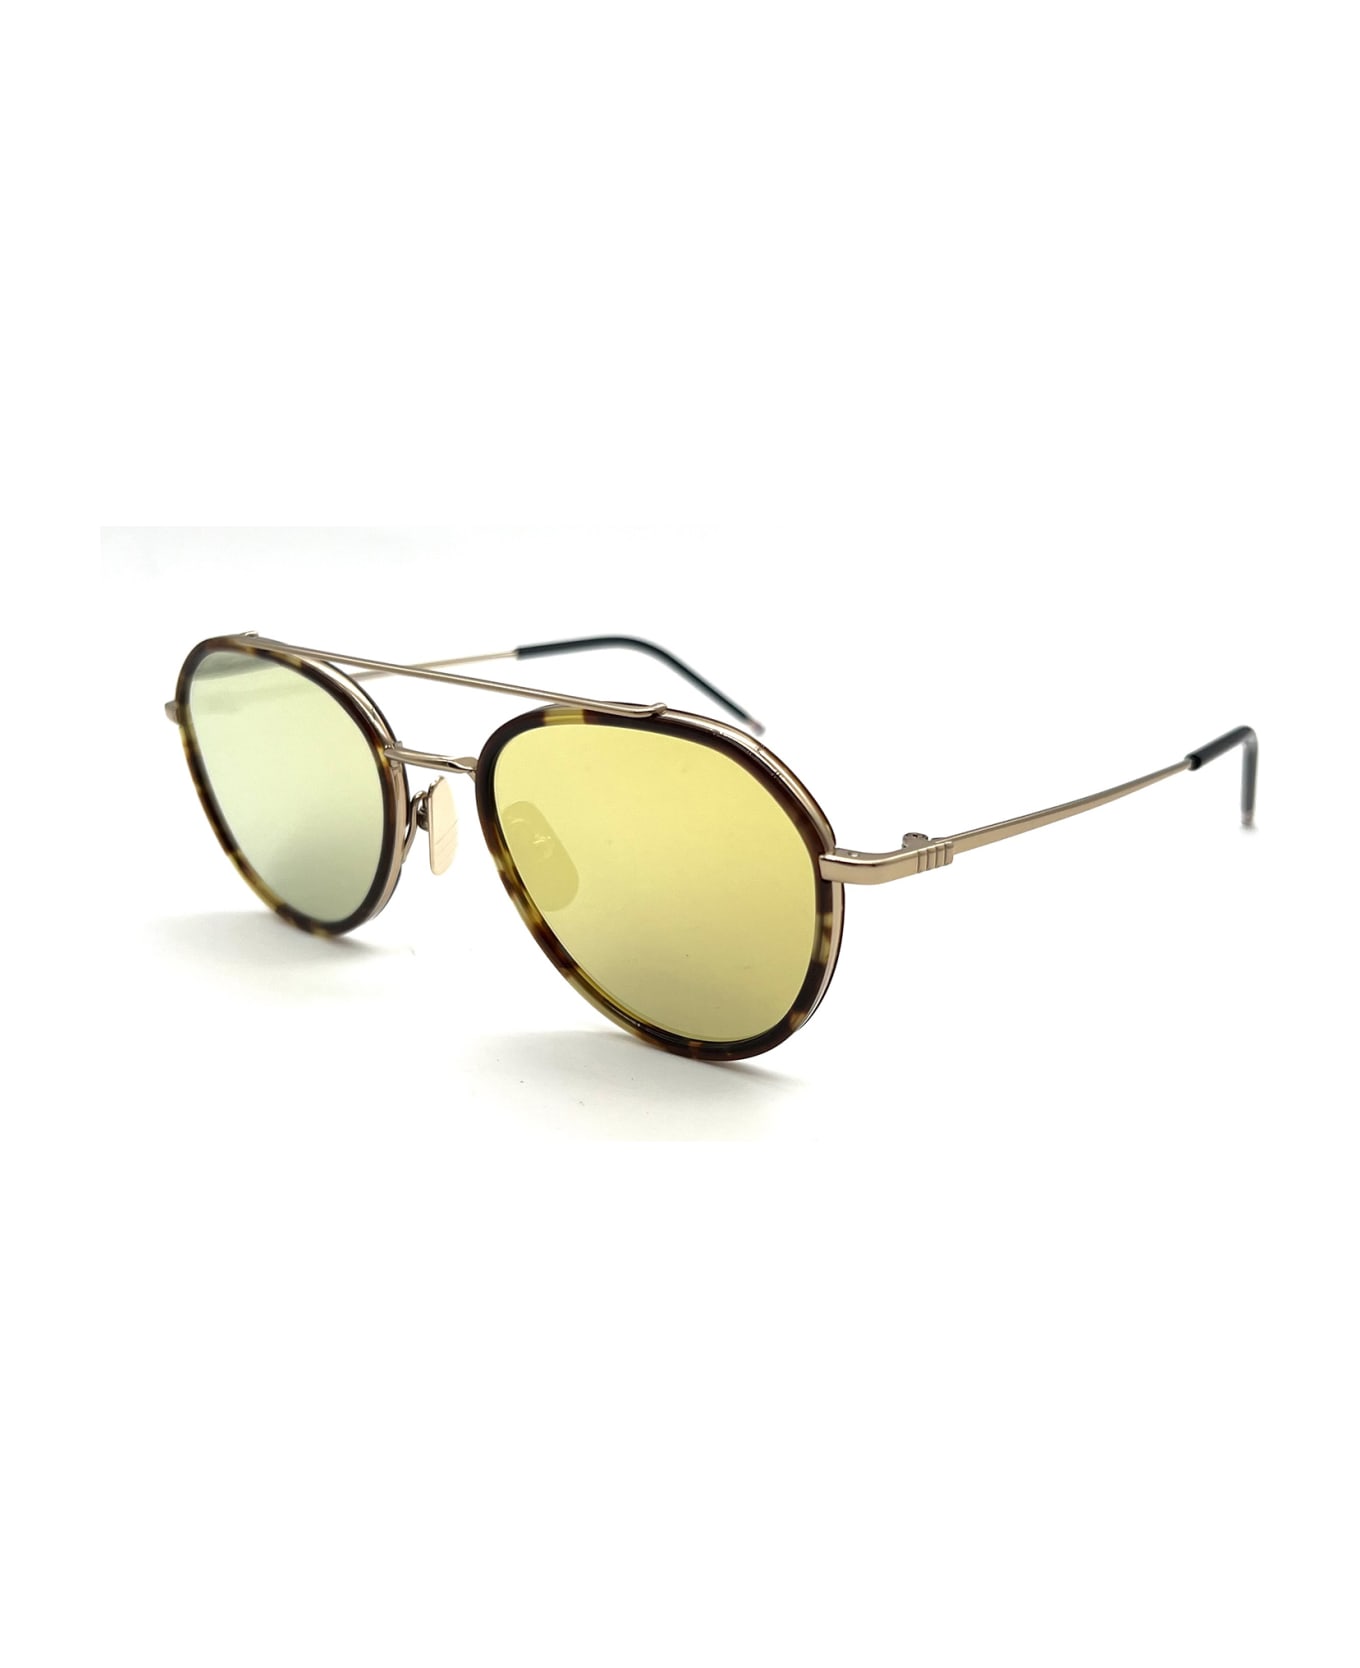 Thom Browne Ues801a/g0003 Sunglasses サングラス